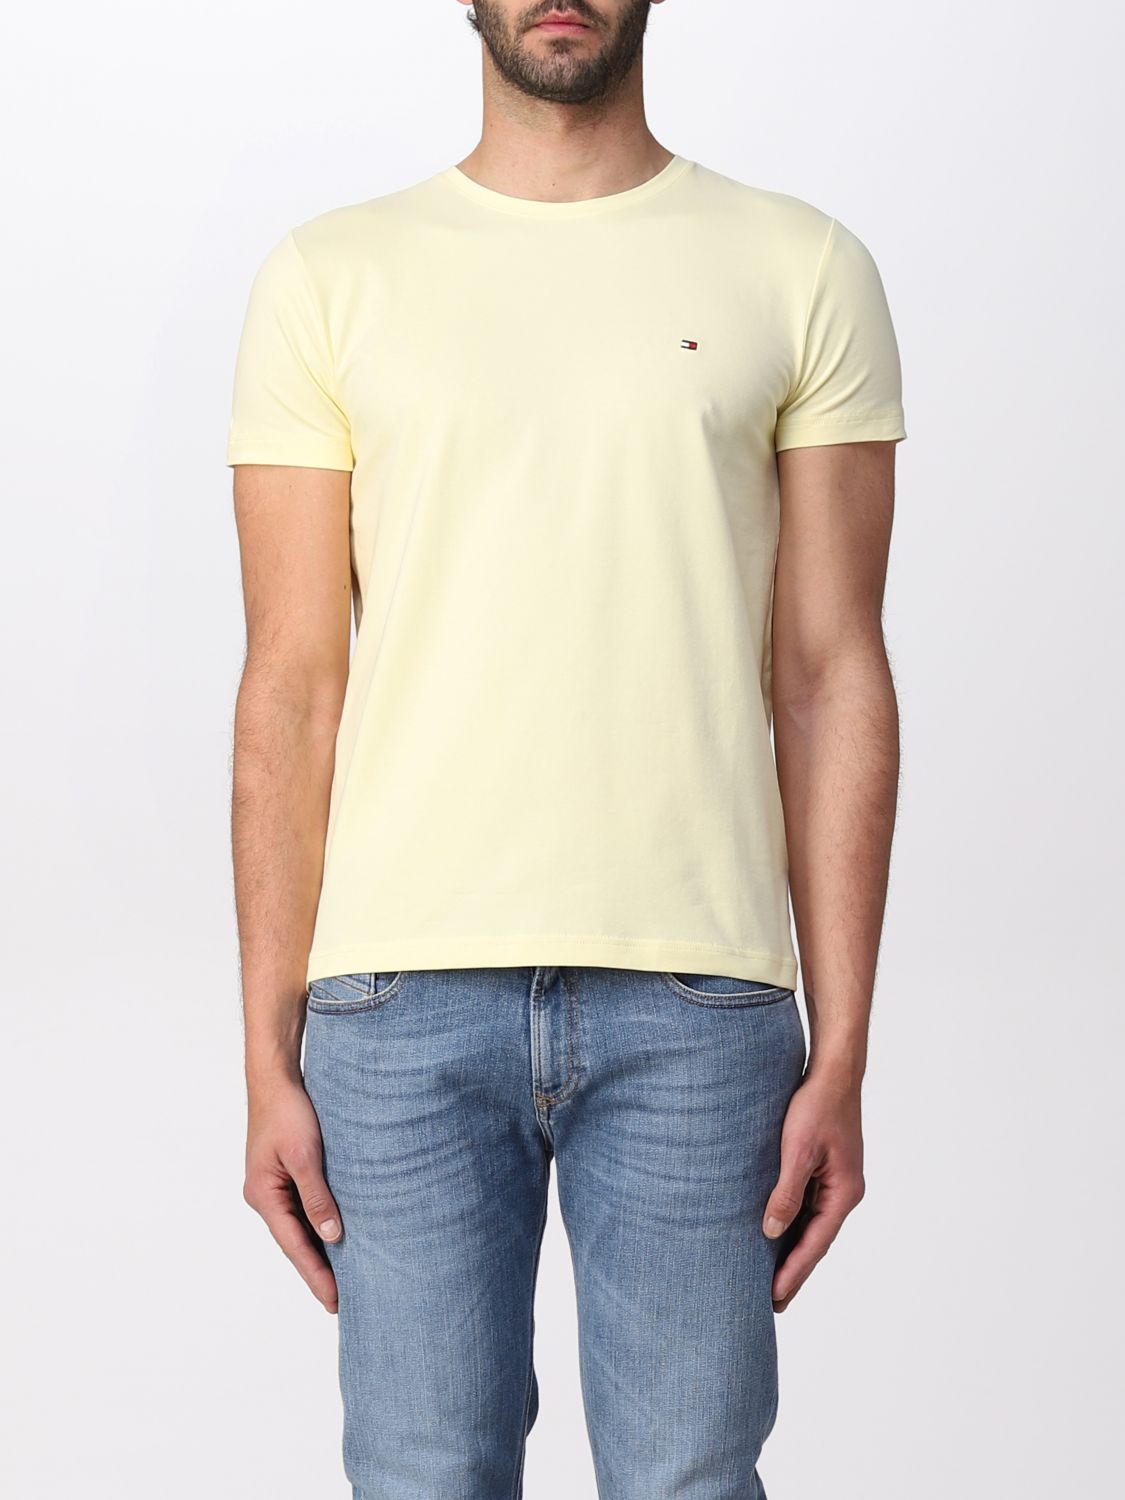 Tommy Hilfiger Outlet: T-shirt men - Lemon | Tommy Hilfiger MW0MW10800 online on GIGLIO.COM